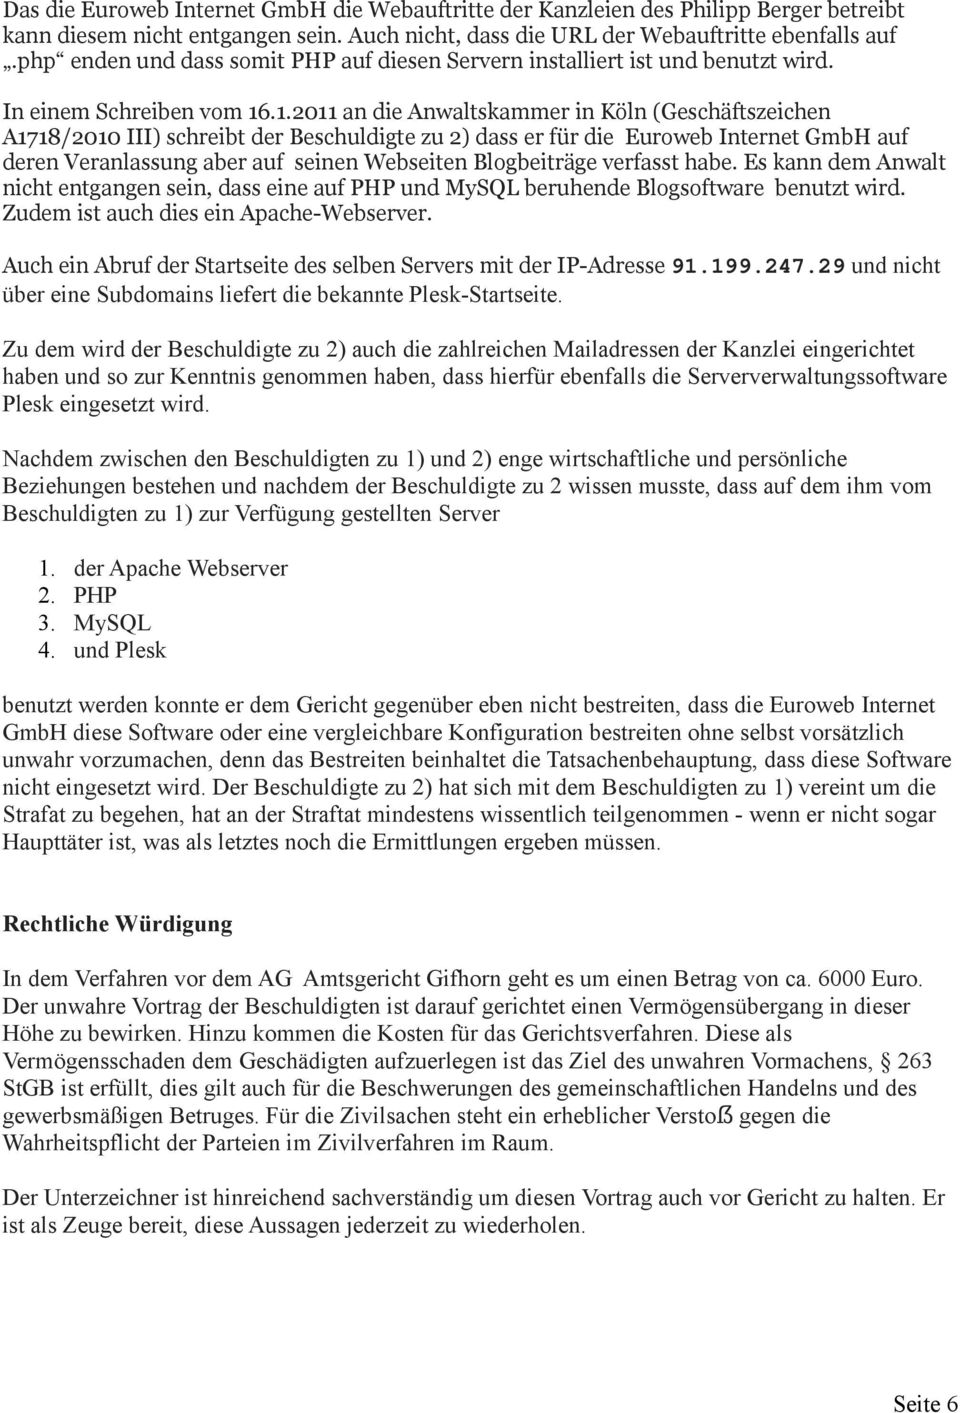 .1.2011 an die Anwaltskammer in Köln (Geschäftszeichen A1718/2010 III) schreibt der Beschuldigte zu 2) dass er für die Euroweb Internet GmbH auf deren Veranlassung aber auf seinen Webseiten